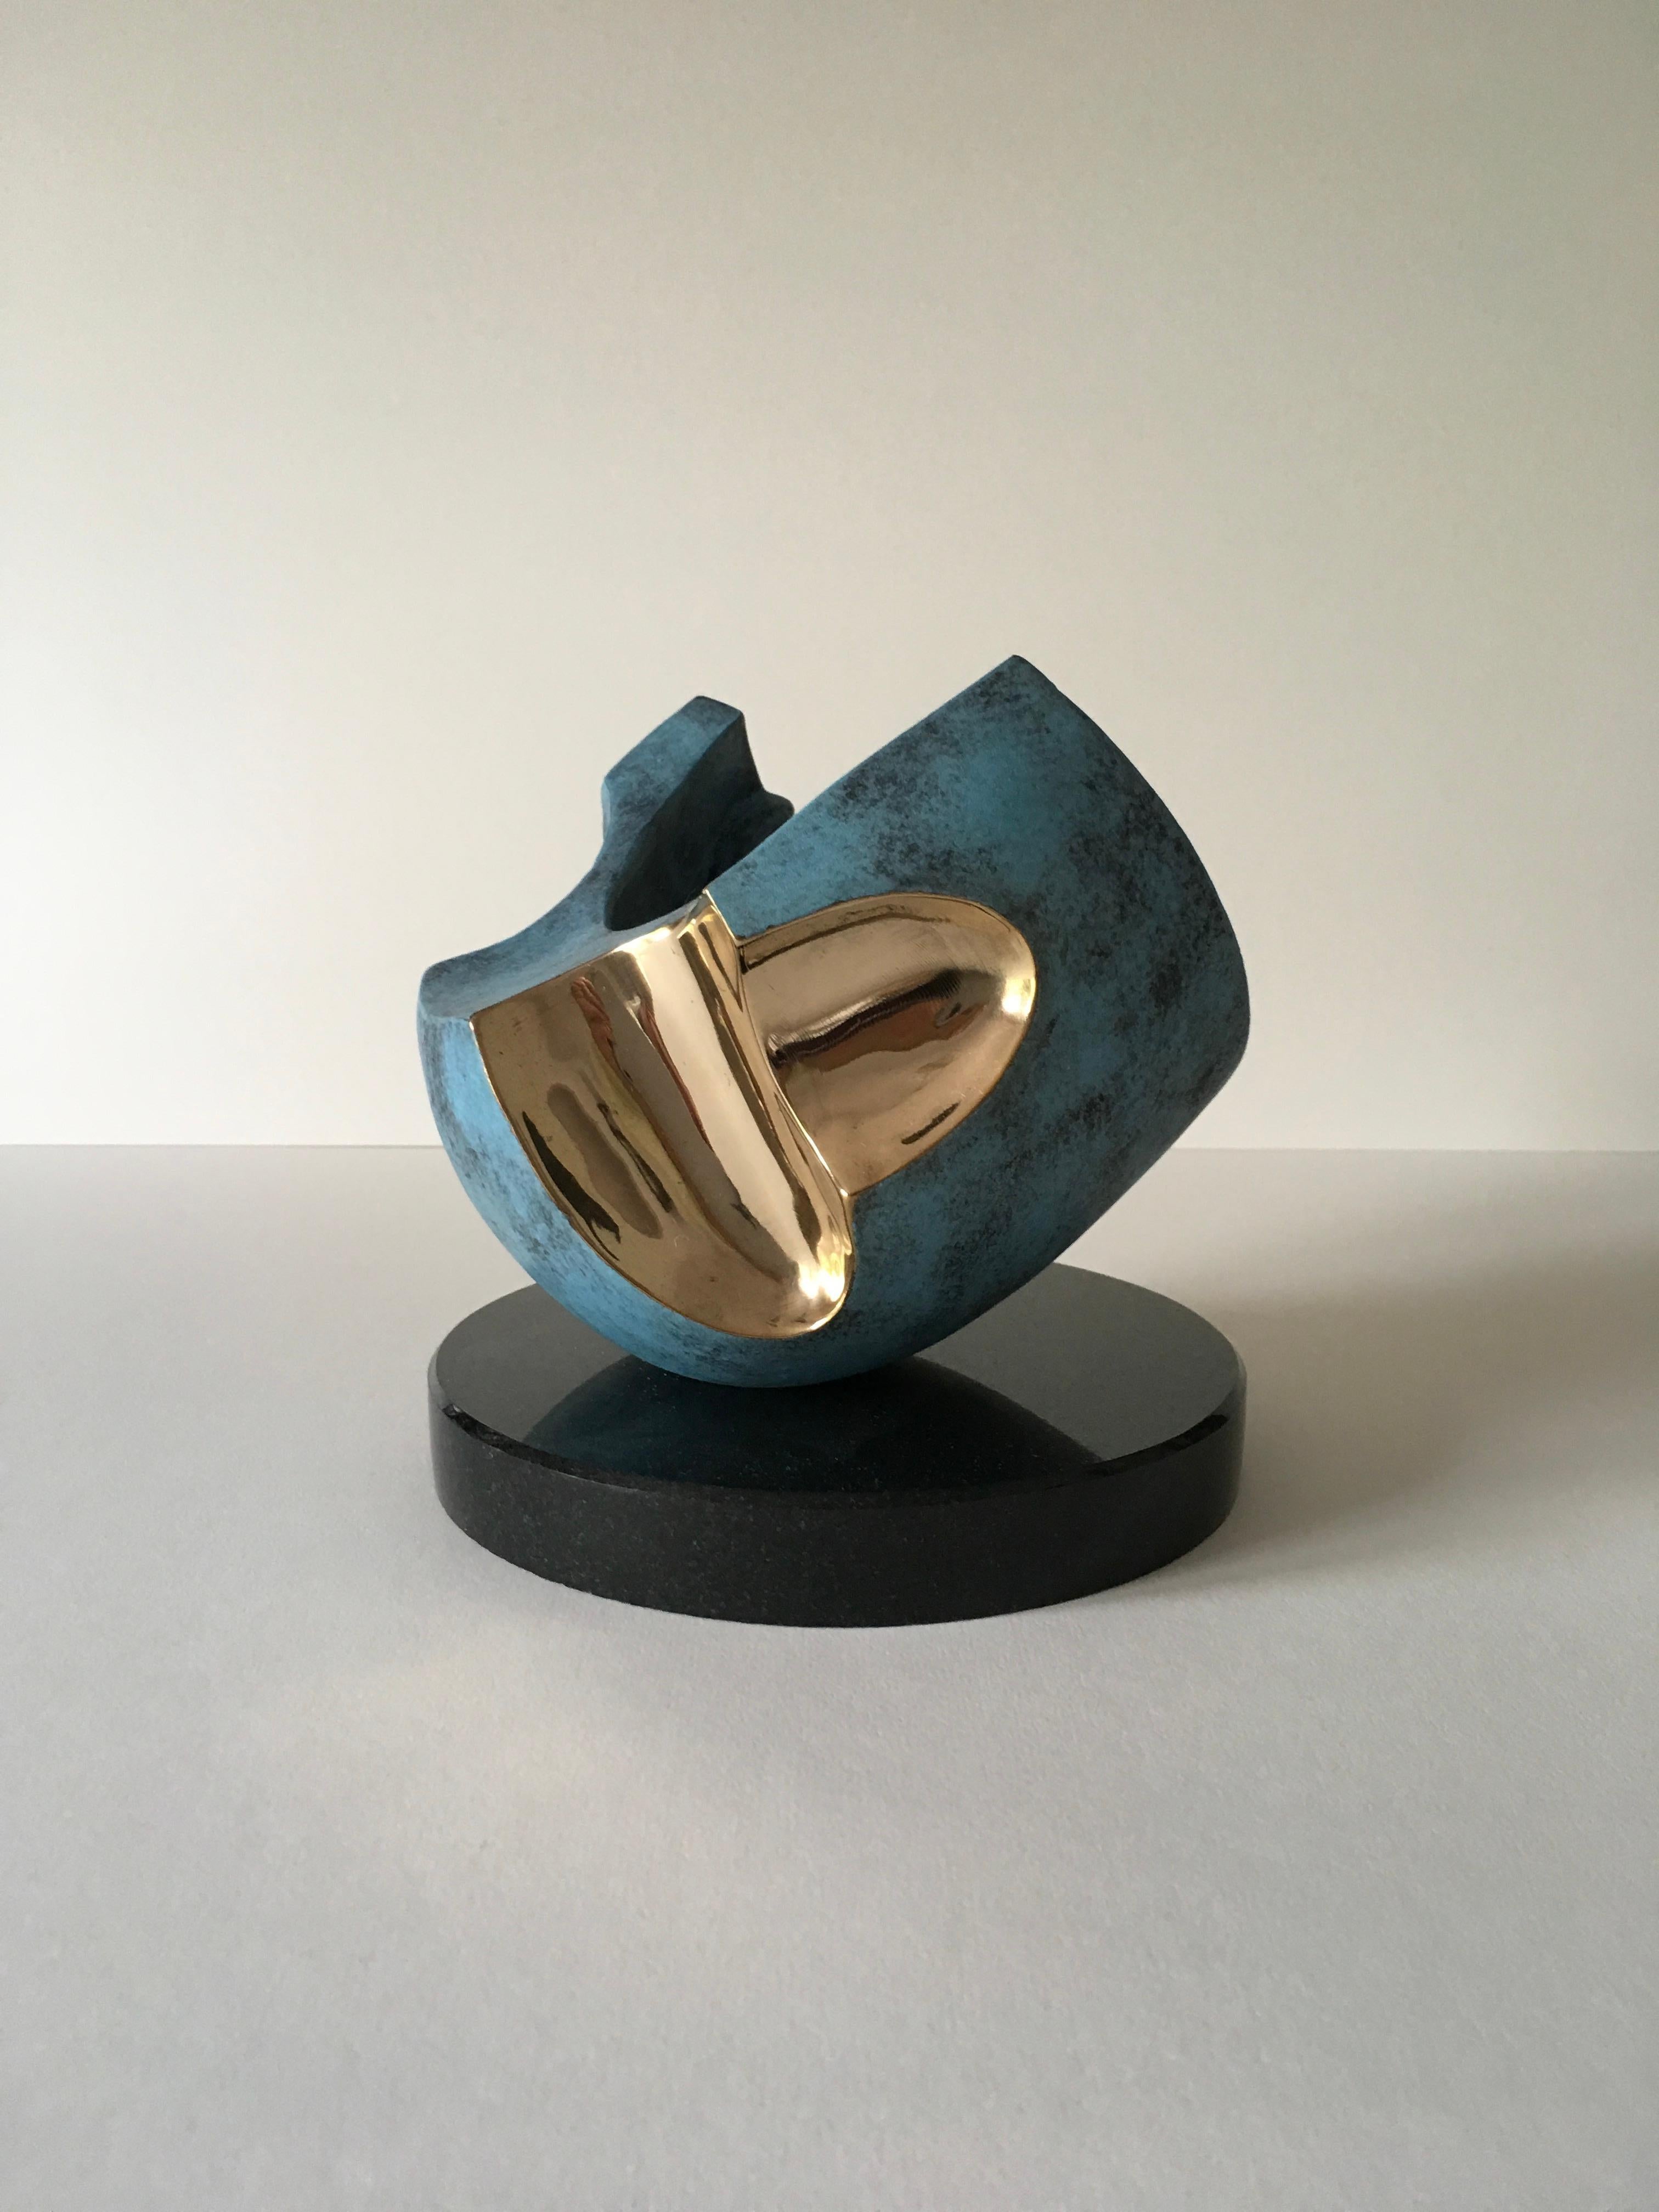 Dieses moderne und unverwechselbare Kunstwerk des zeitgenössischen Künstlers und Bildhauers David Sprakes verschiebt die Grenzen der modernen Bildhauerei. Sprakes nutzt Materialität und Design, um einzigartige und originelle künstlerische Formen zu